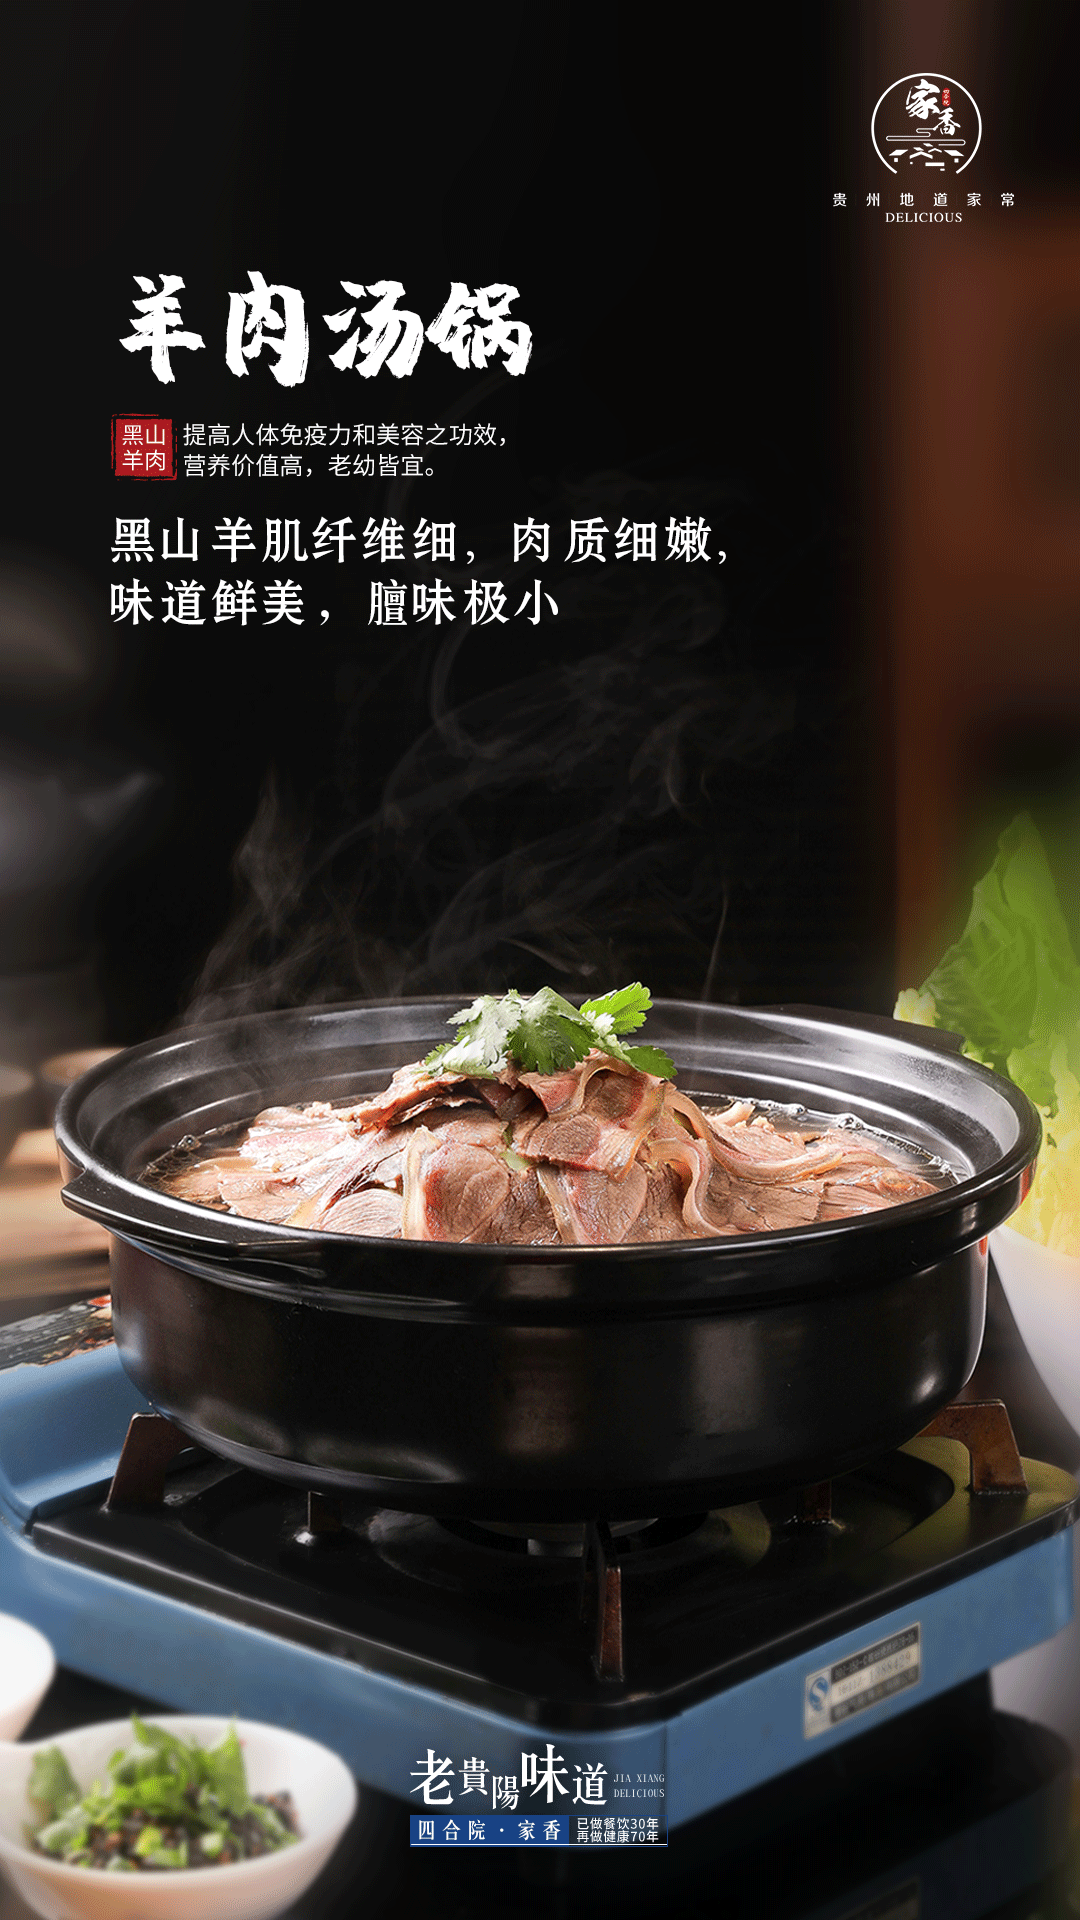 鲜香羊肉&浓郁羊汤,四合院·家香「羊肉汤锅」暖你一整冬!